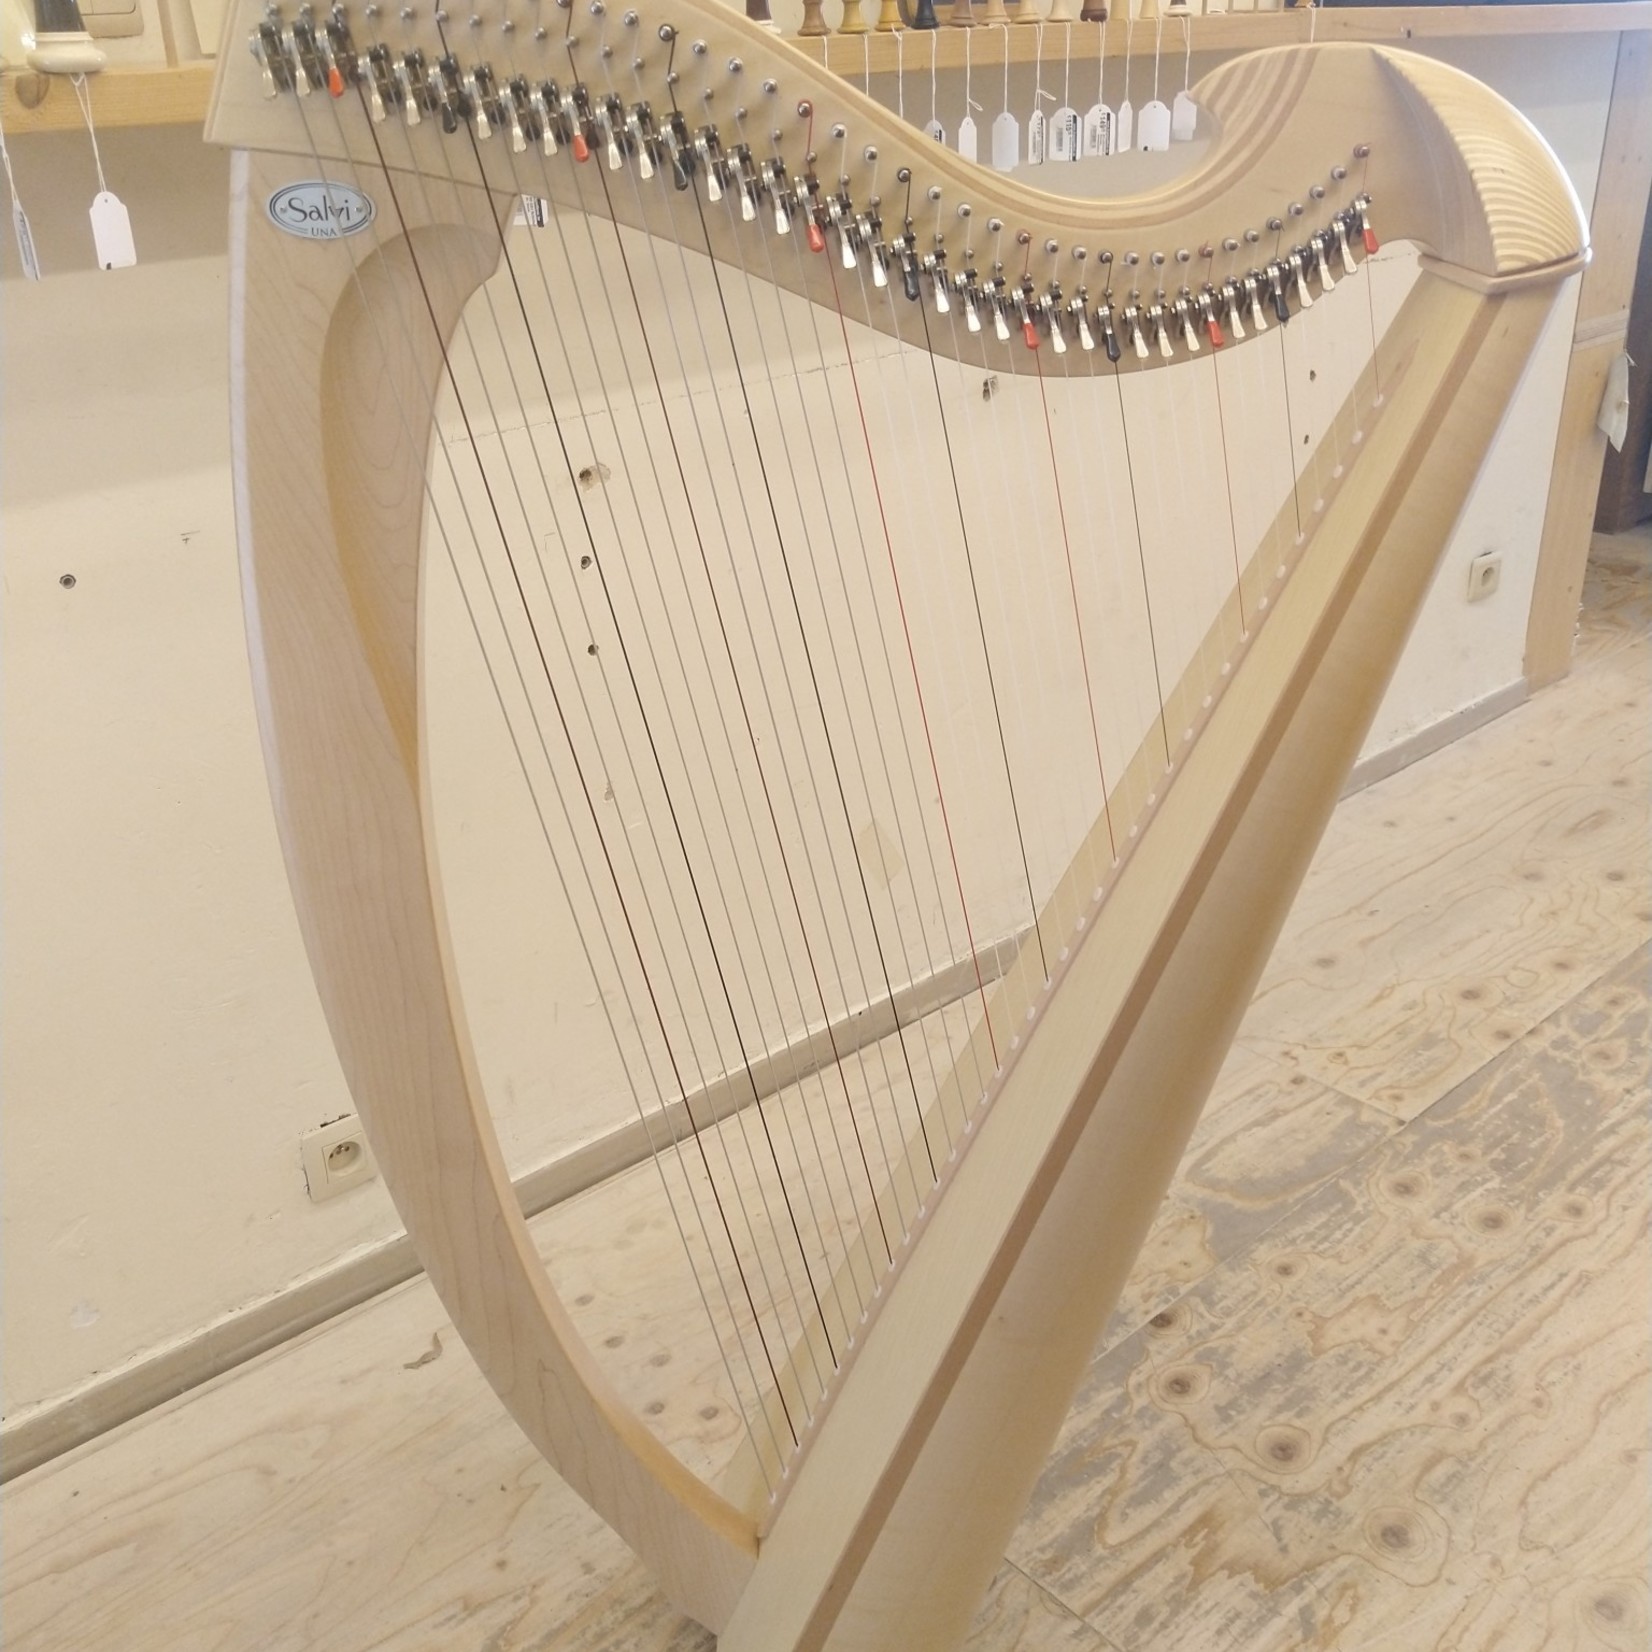 Salvi SALVI Una Naturel - tweedehands harp -